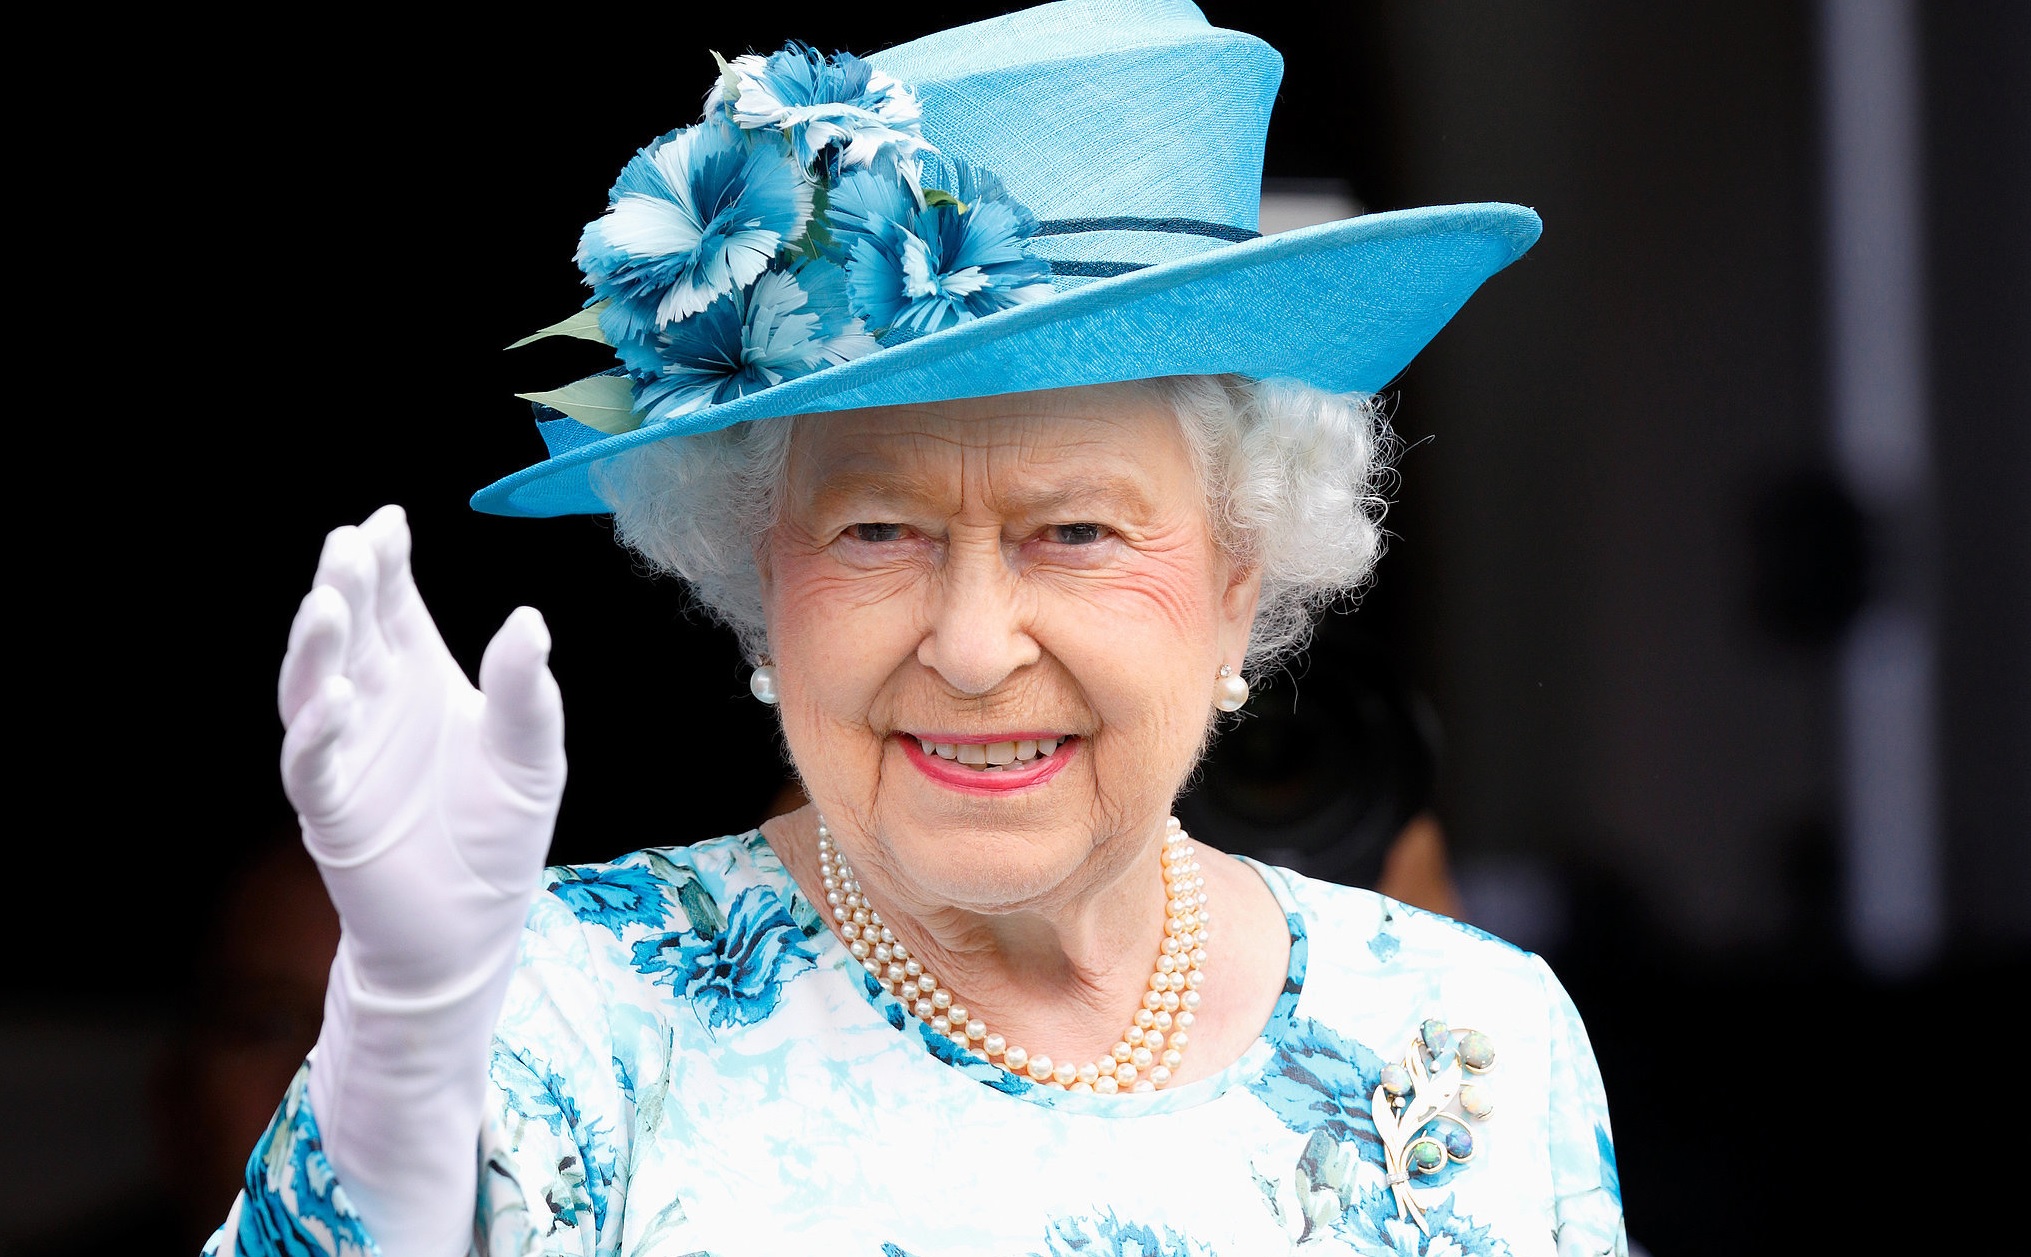 Regina Elisabeta a II-a a capitulat! Vestea a fost dată de reprezentanții Palatului Buckingham